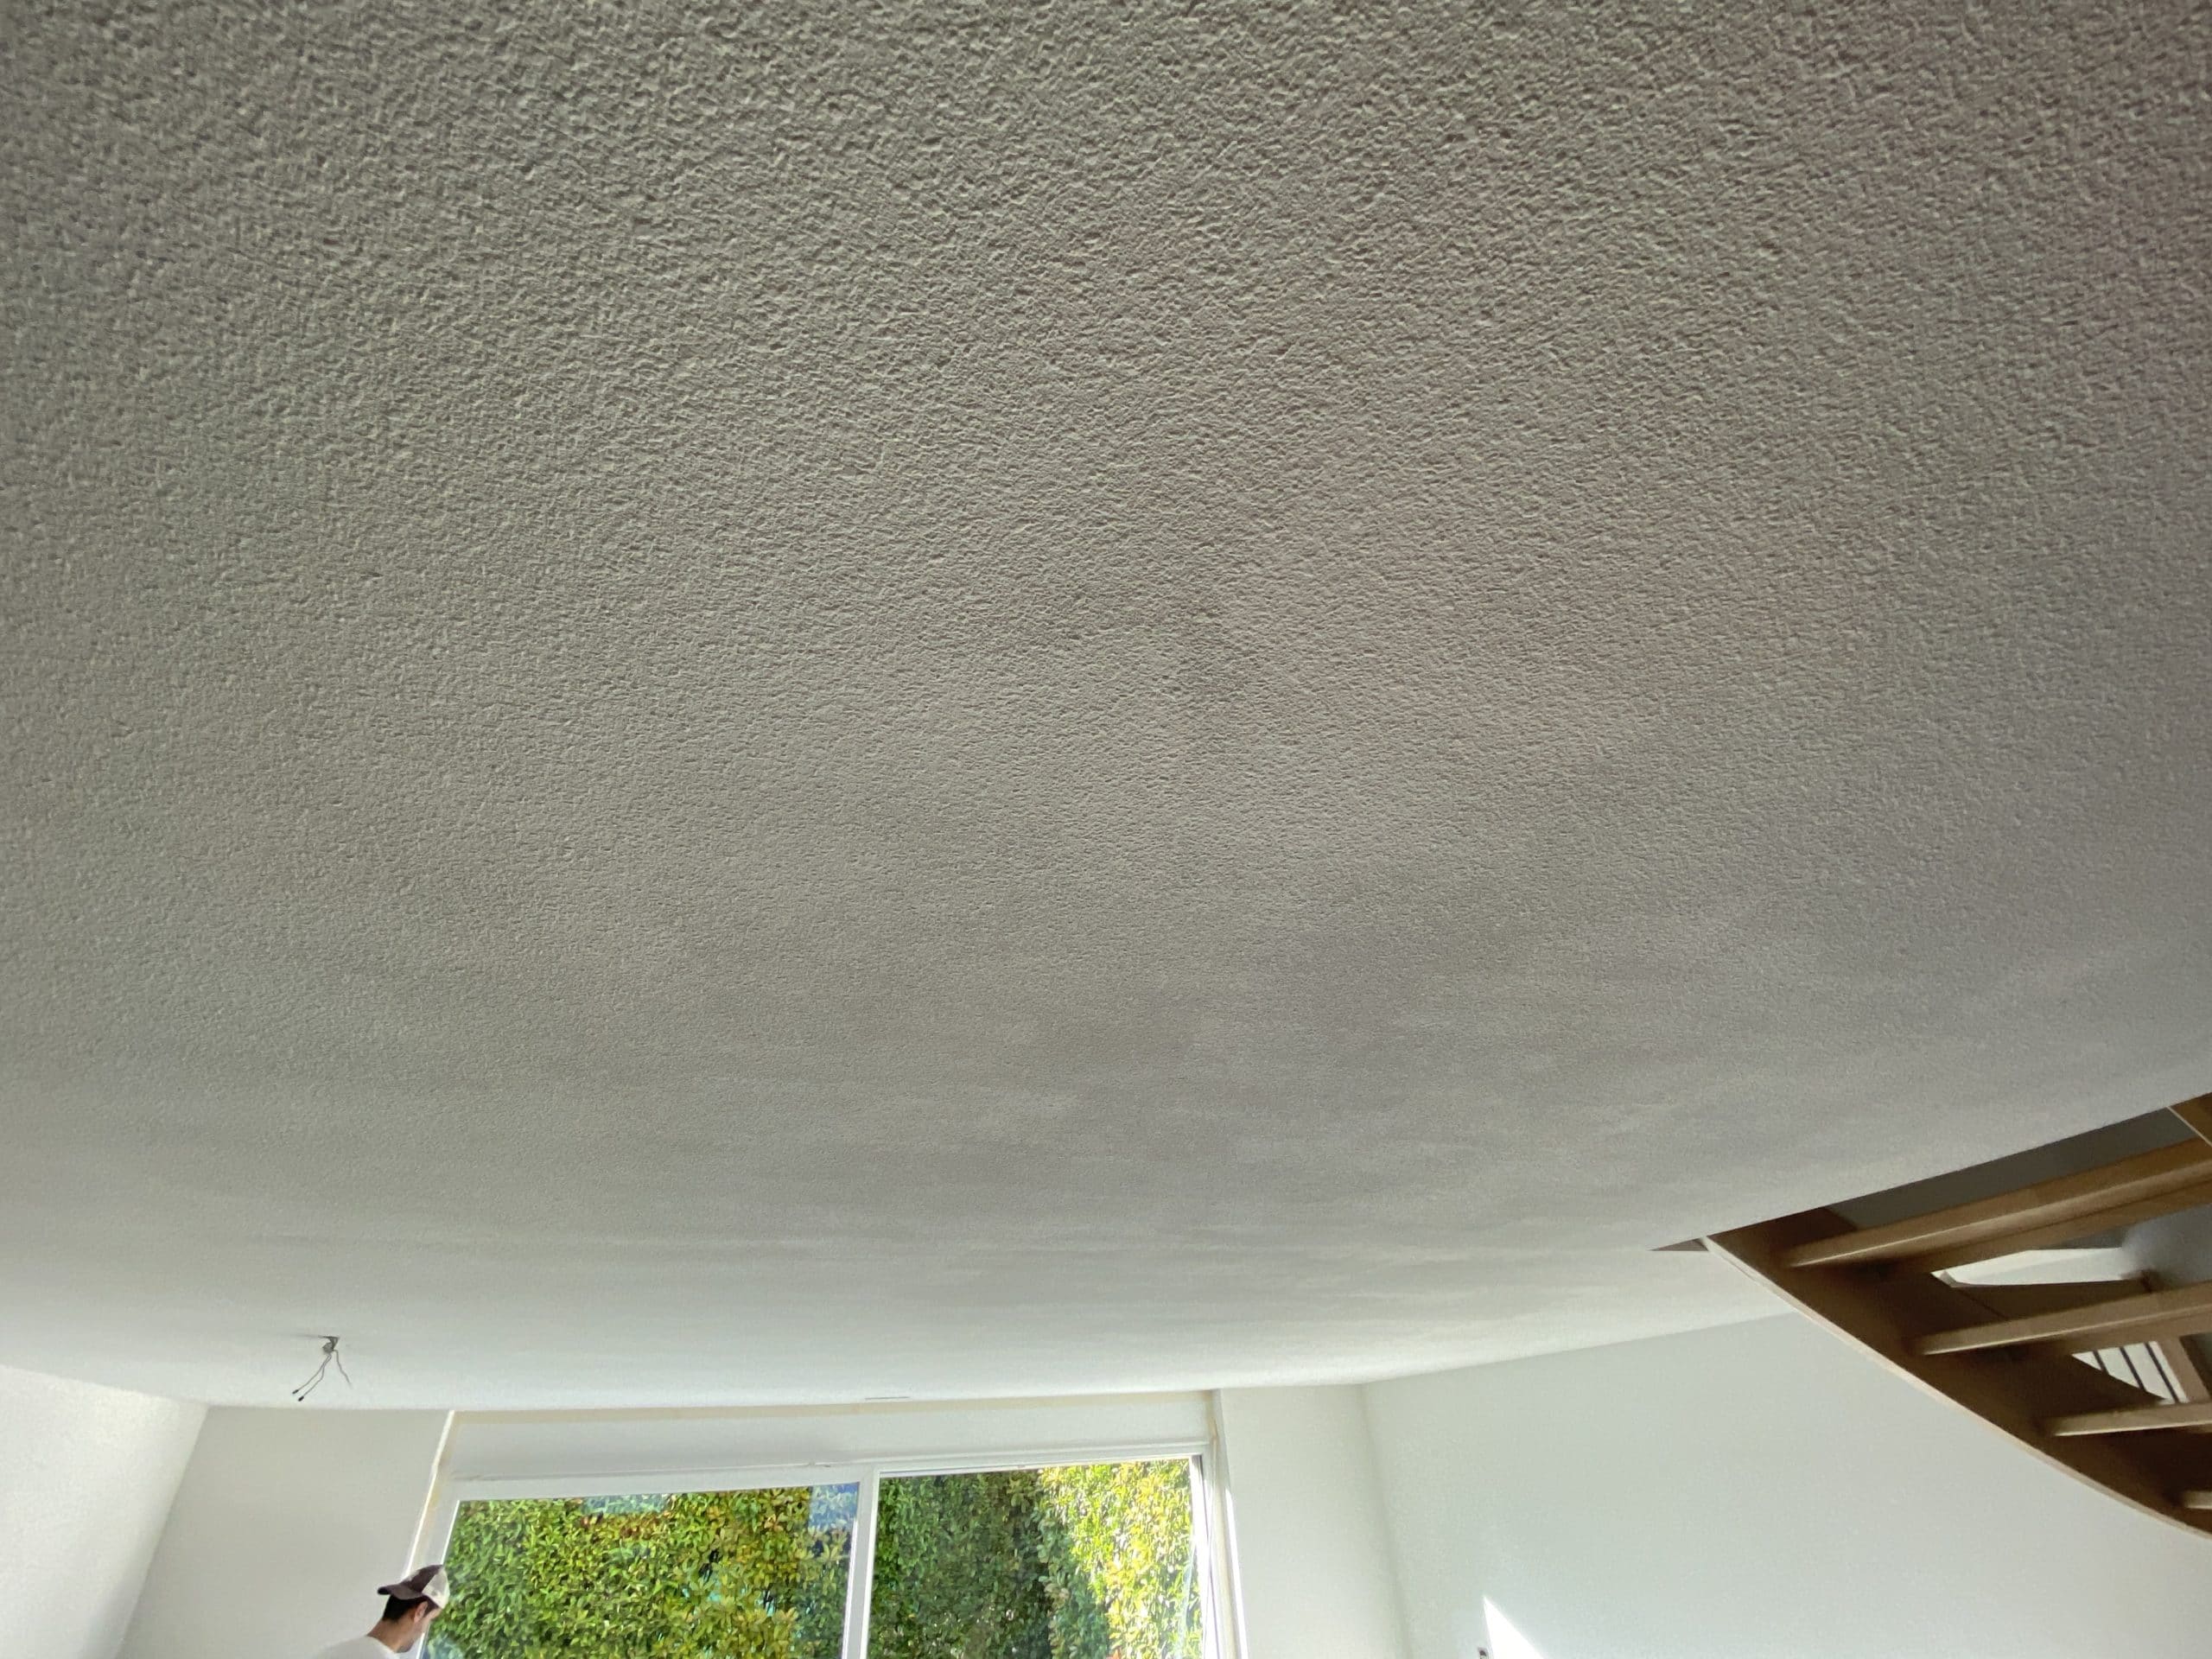 Le plafond en crépi gouttelette présente de nombreuses traces (mauvaise qualité de peinture et mauvaise qualité d'exécution))